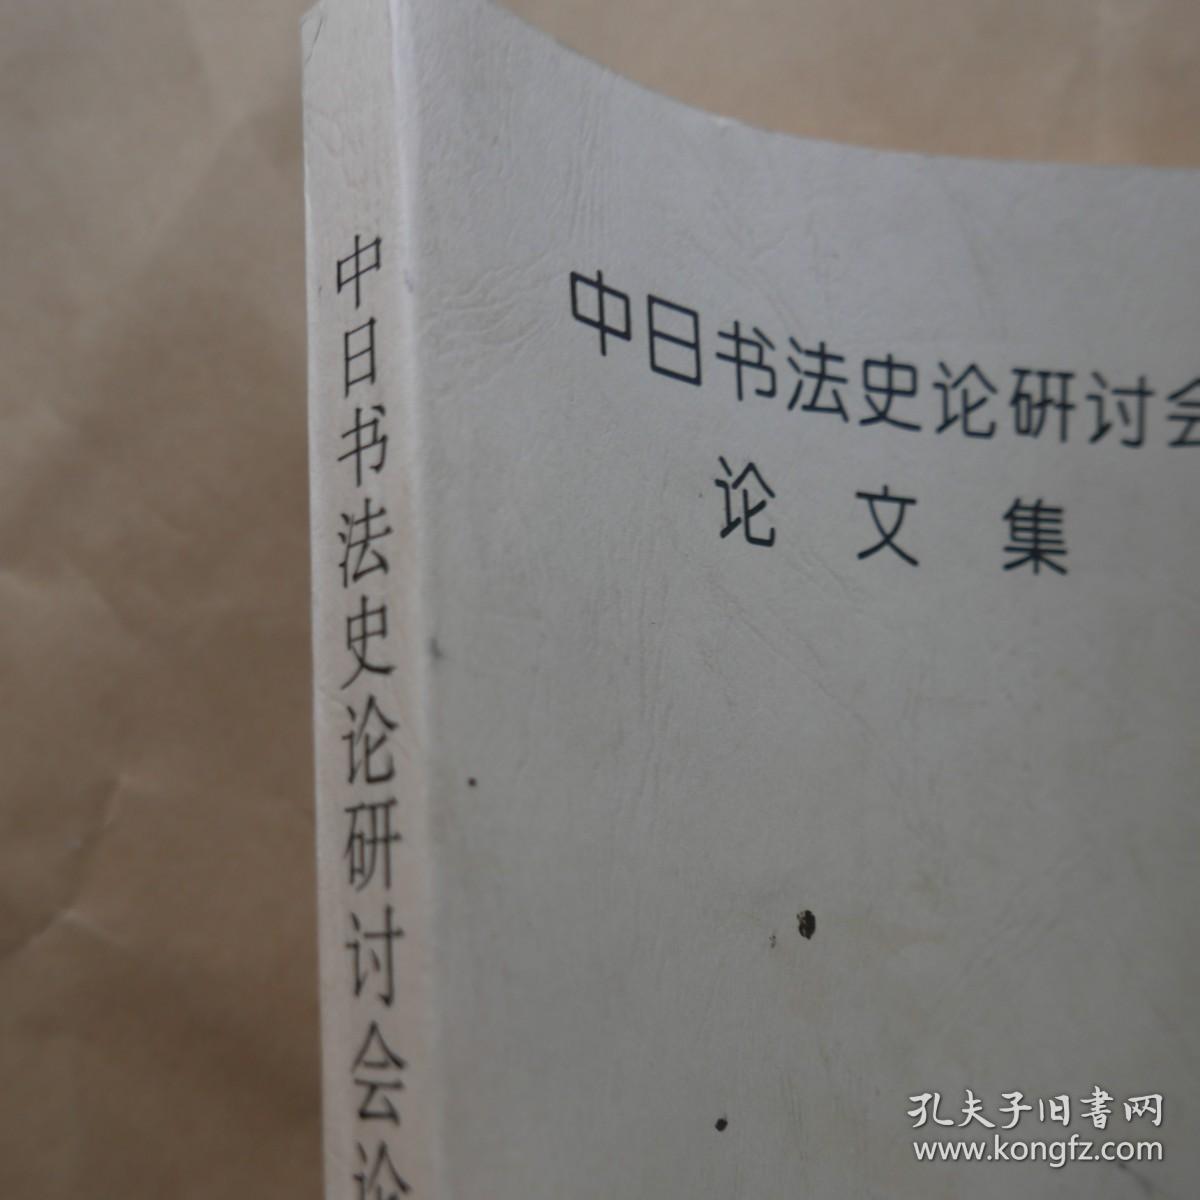 中国书法史论研讨会论文集